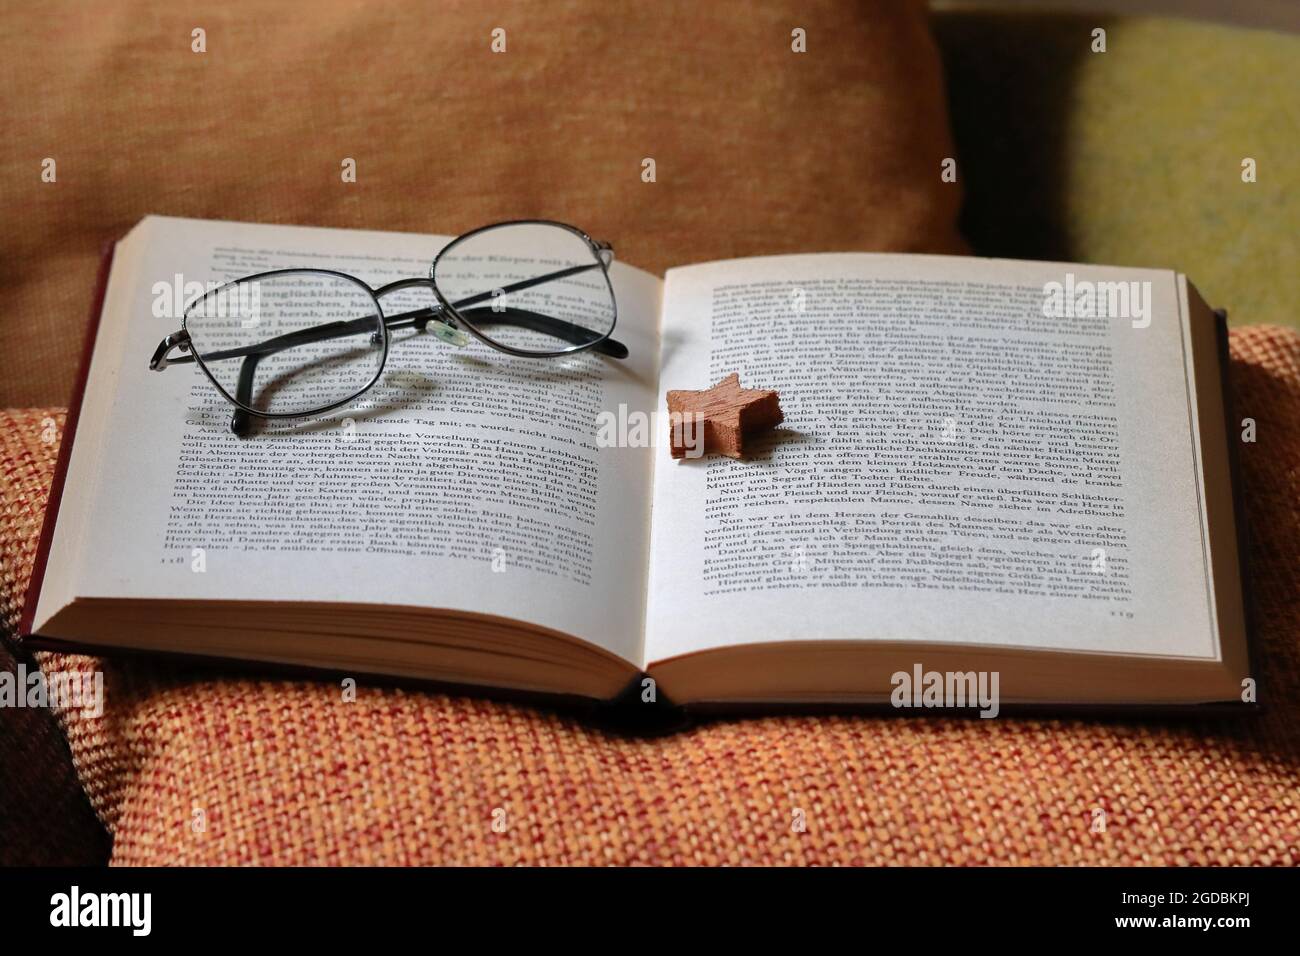 ein aufgeschlagenes Buch liegt zusammen mit einem Holzstern als Lesezeichen und einer Brille auf einem orangenen Kissen Foto Stock